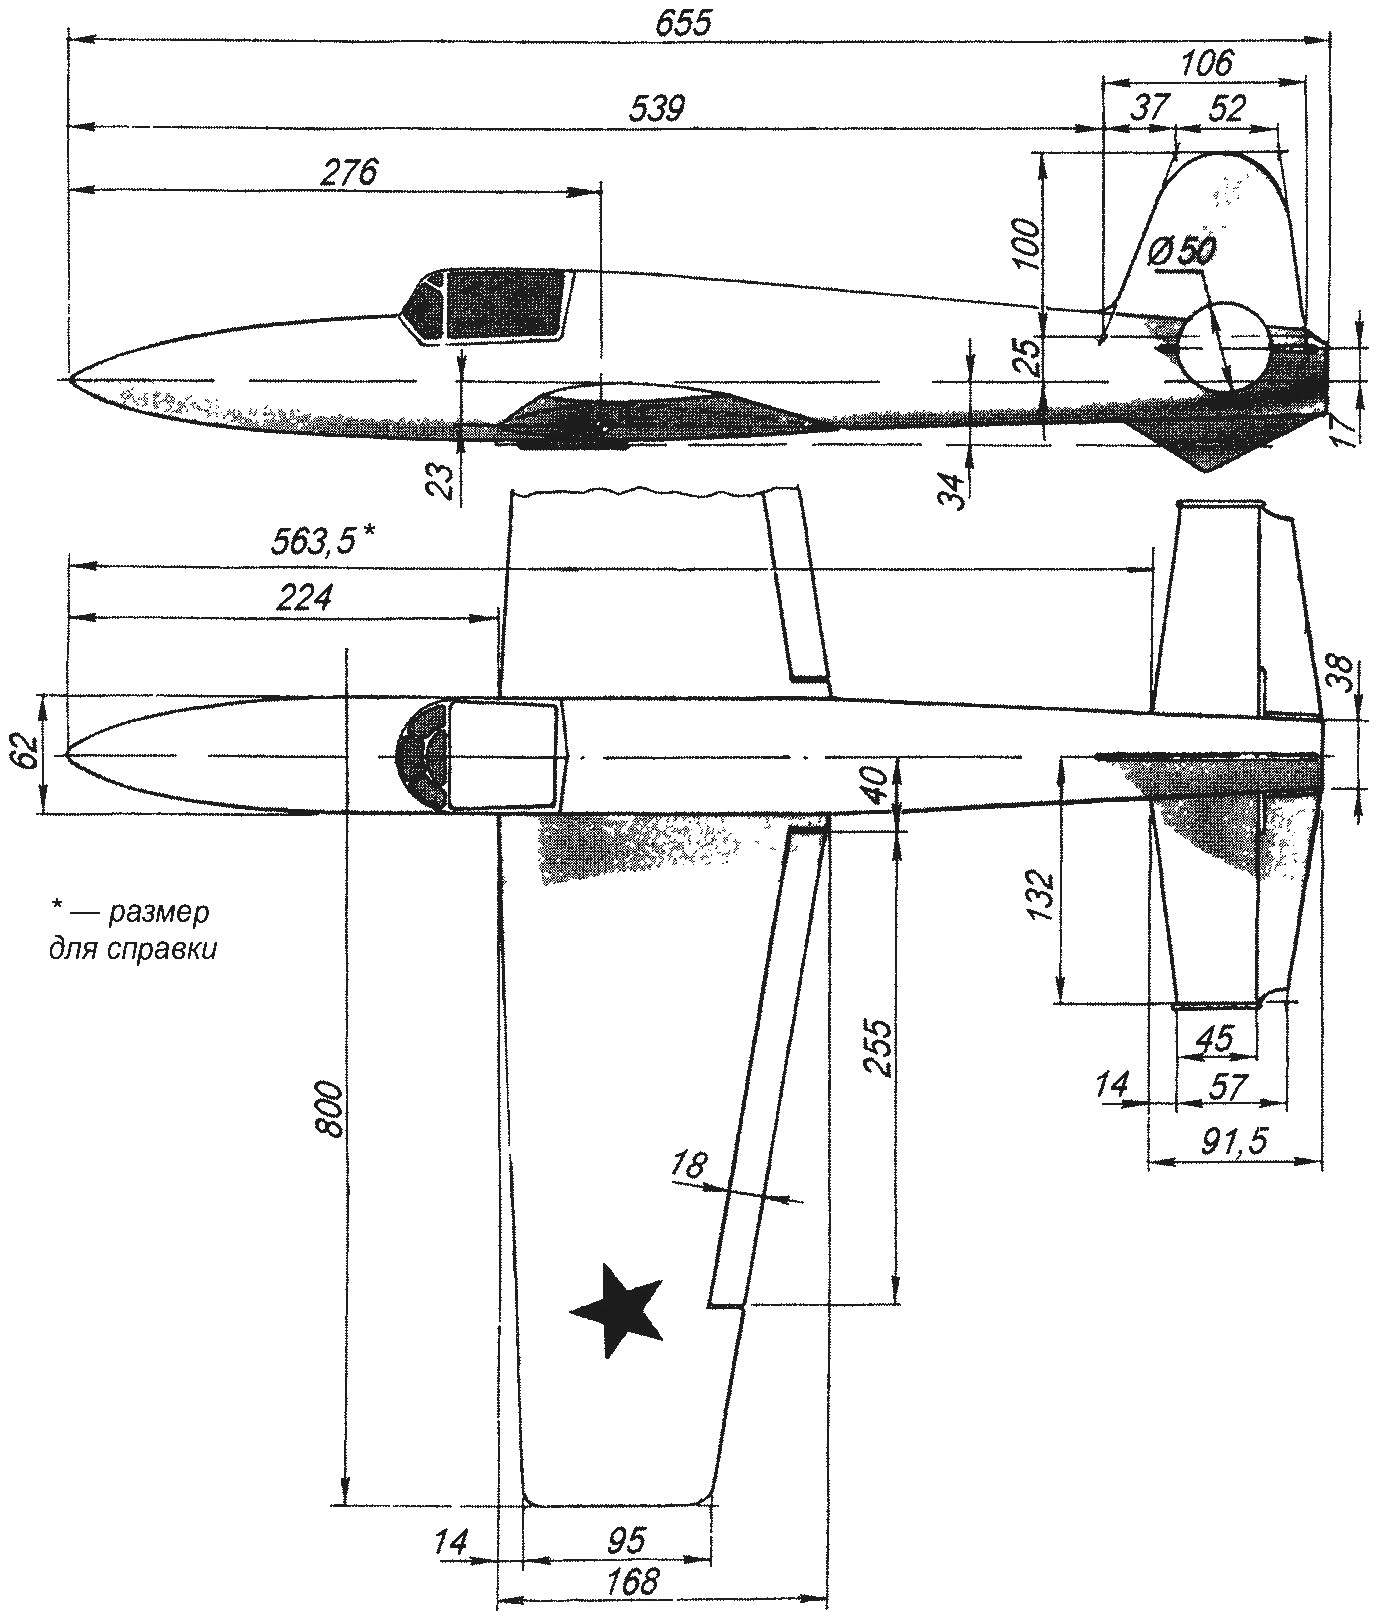 Геометрическая схема радиоуправляемой модели-копии ракетного истребителя-перехватчика БИ-1